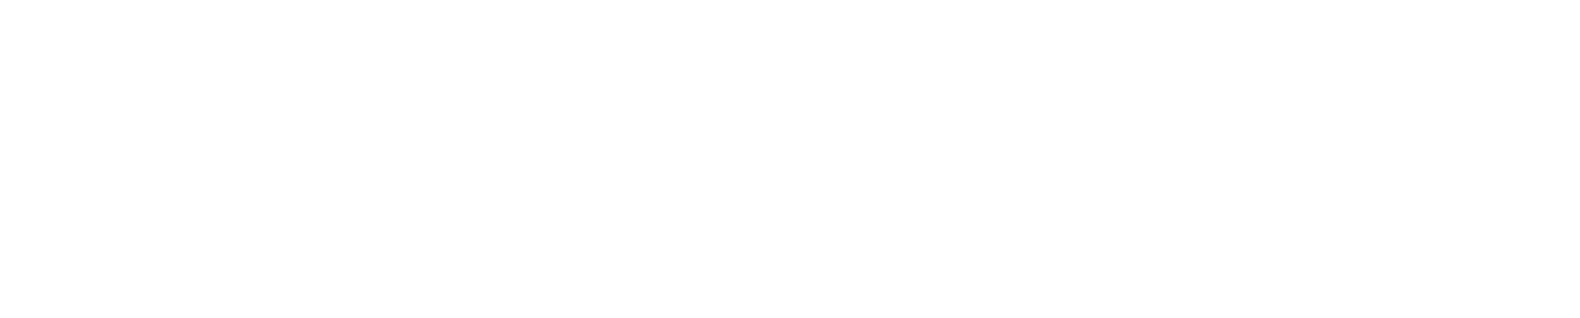 Kosé
 logo large for dark backgrounds (transparent PNG)